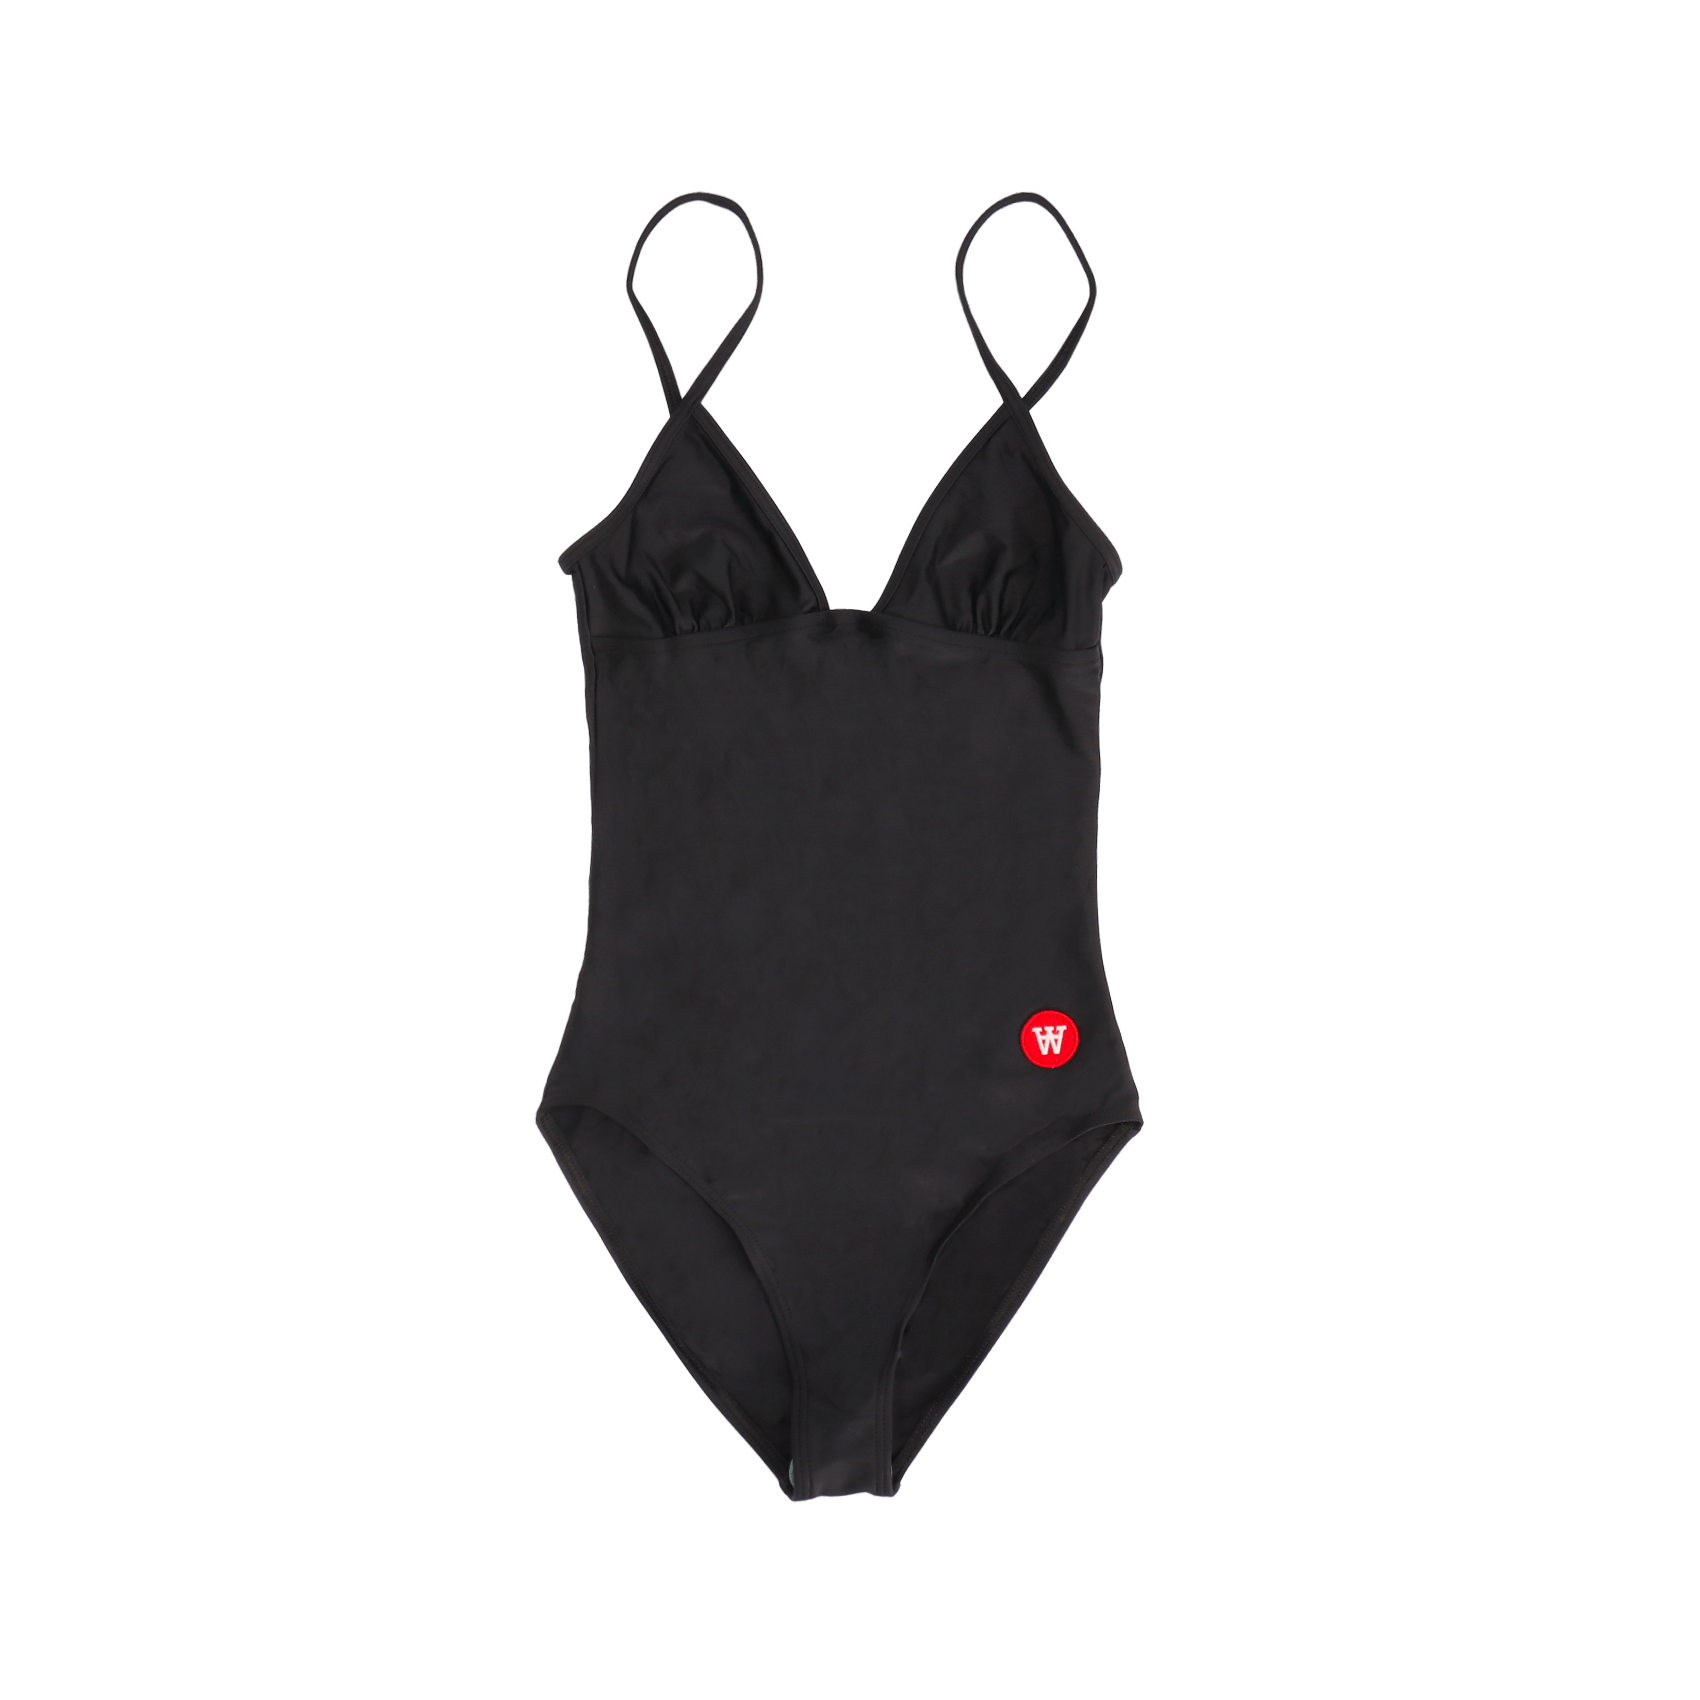 Rio Swimsuit - Black.